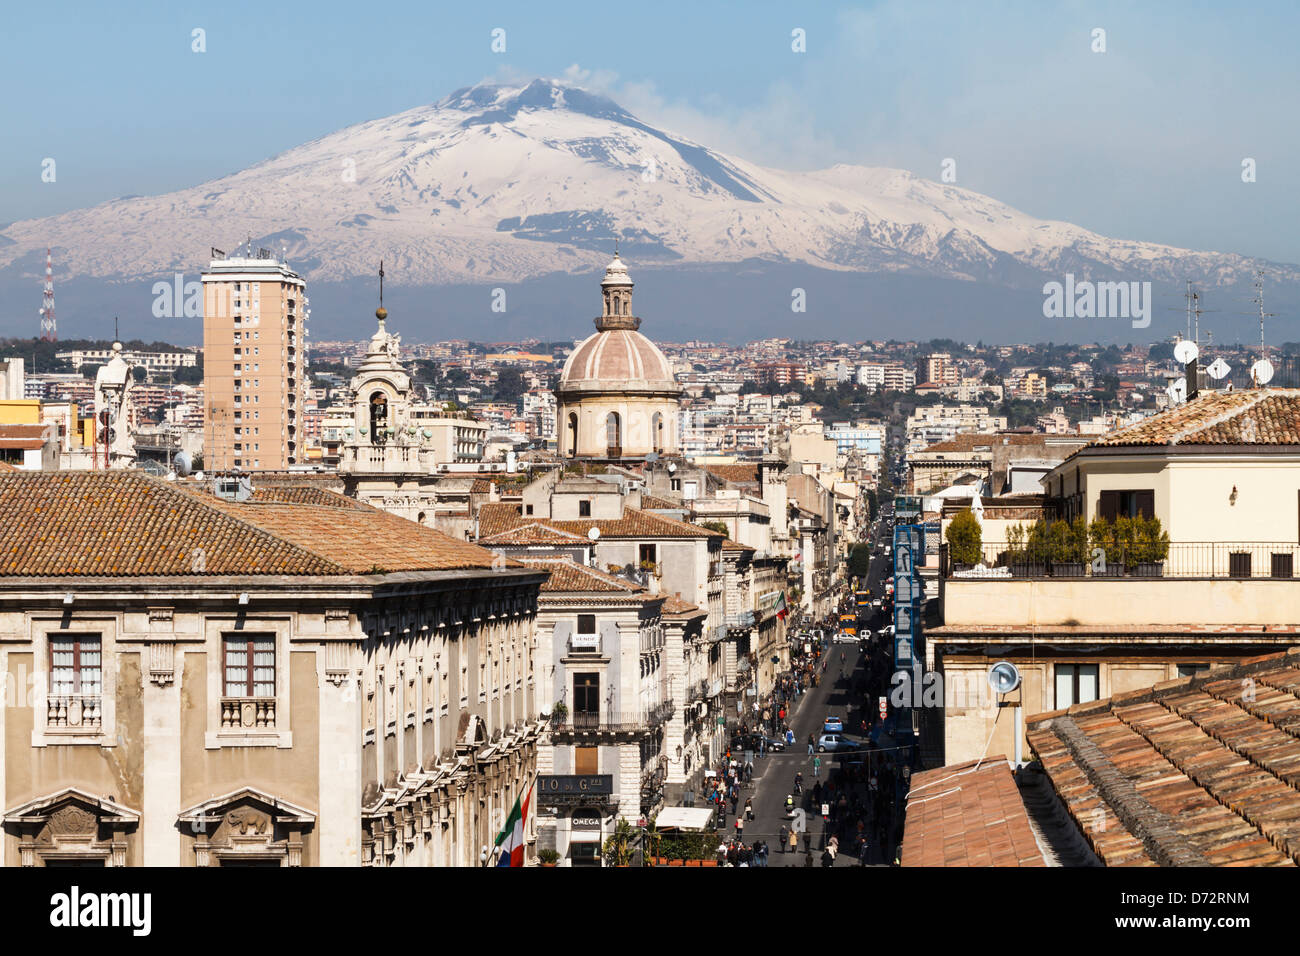 Catania, la centrale di 'Via Etnea' street con la coperta di neve il Monte Etna, Sicilia, Italia Foto Stock